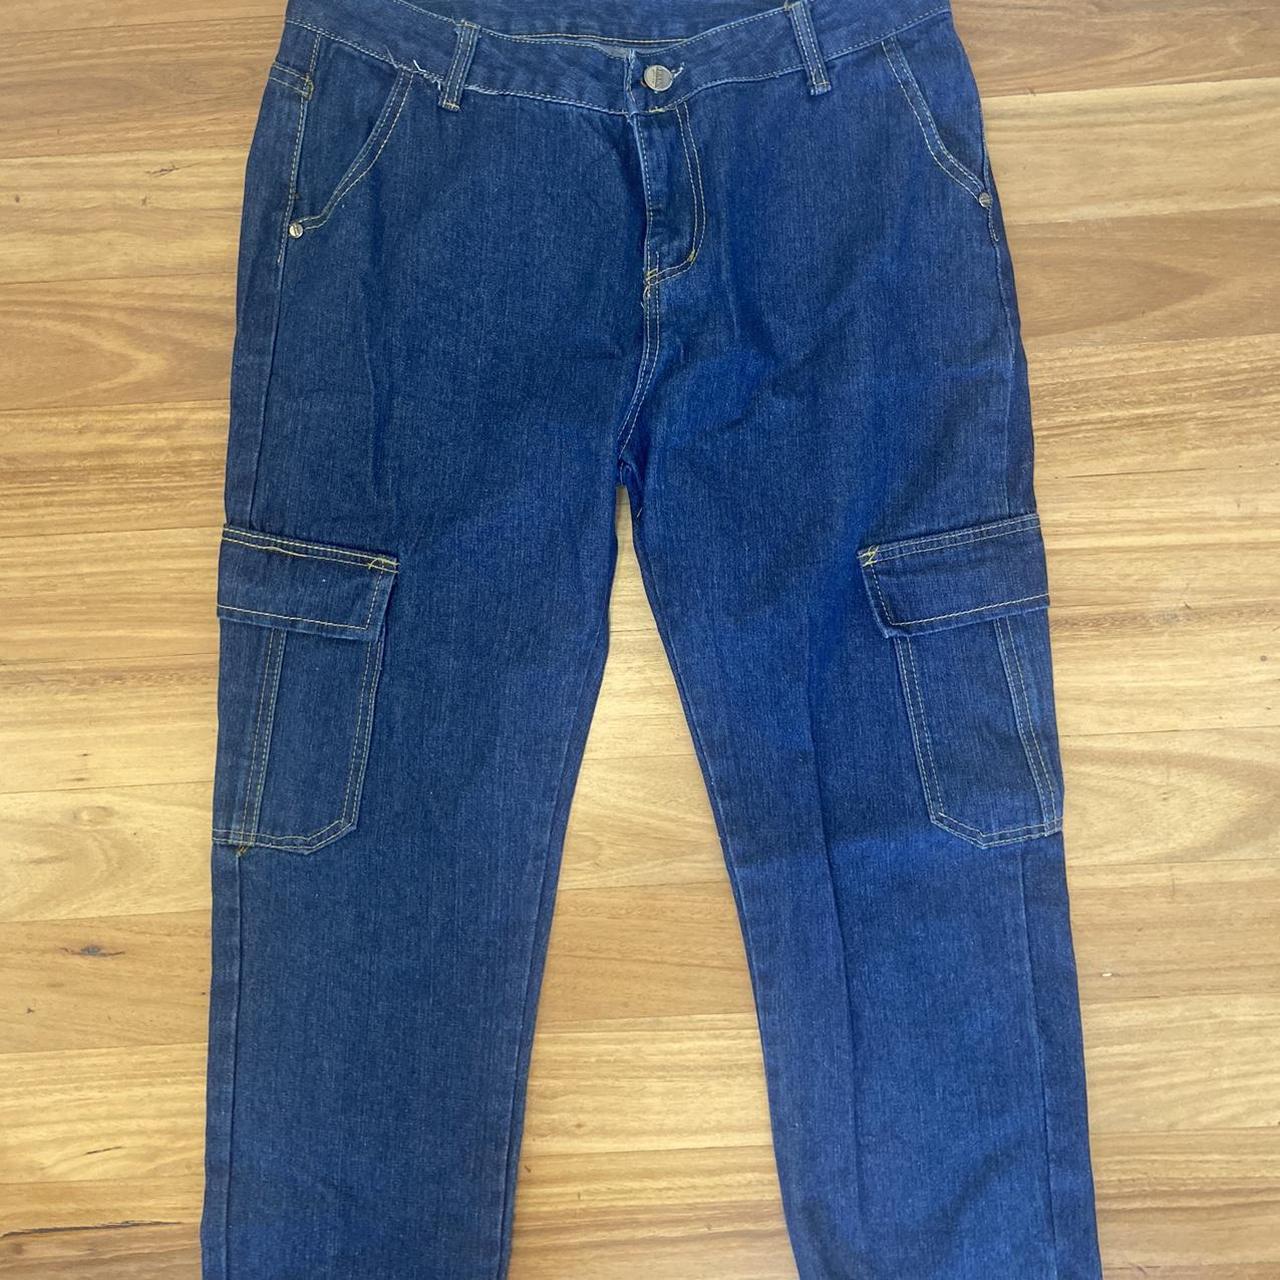 Vintage cargo pants jeans carpenter style - Size-... - Depop